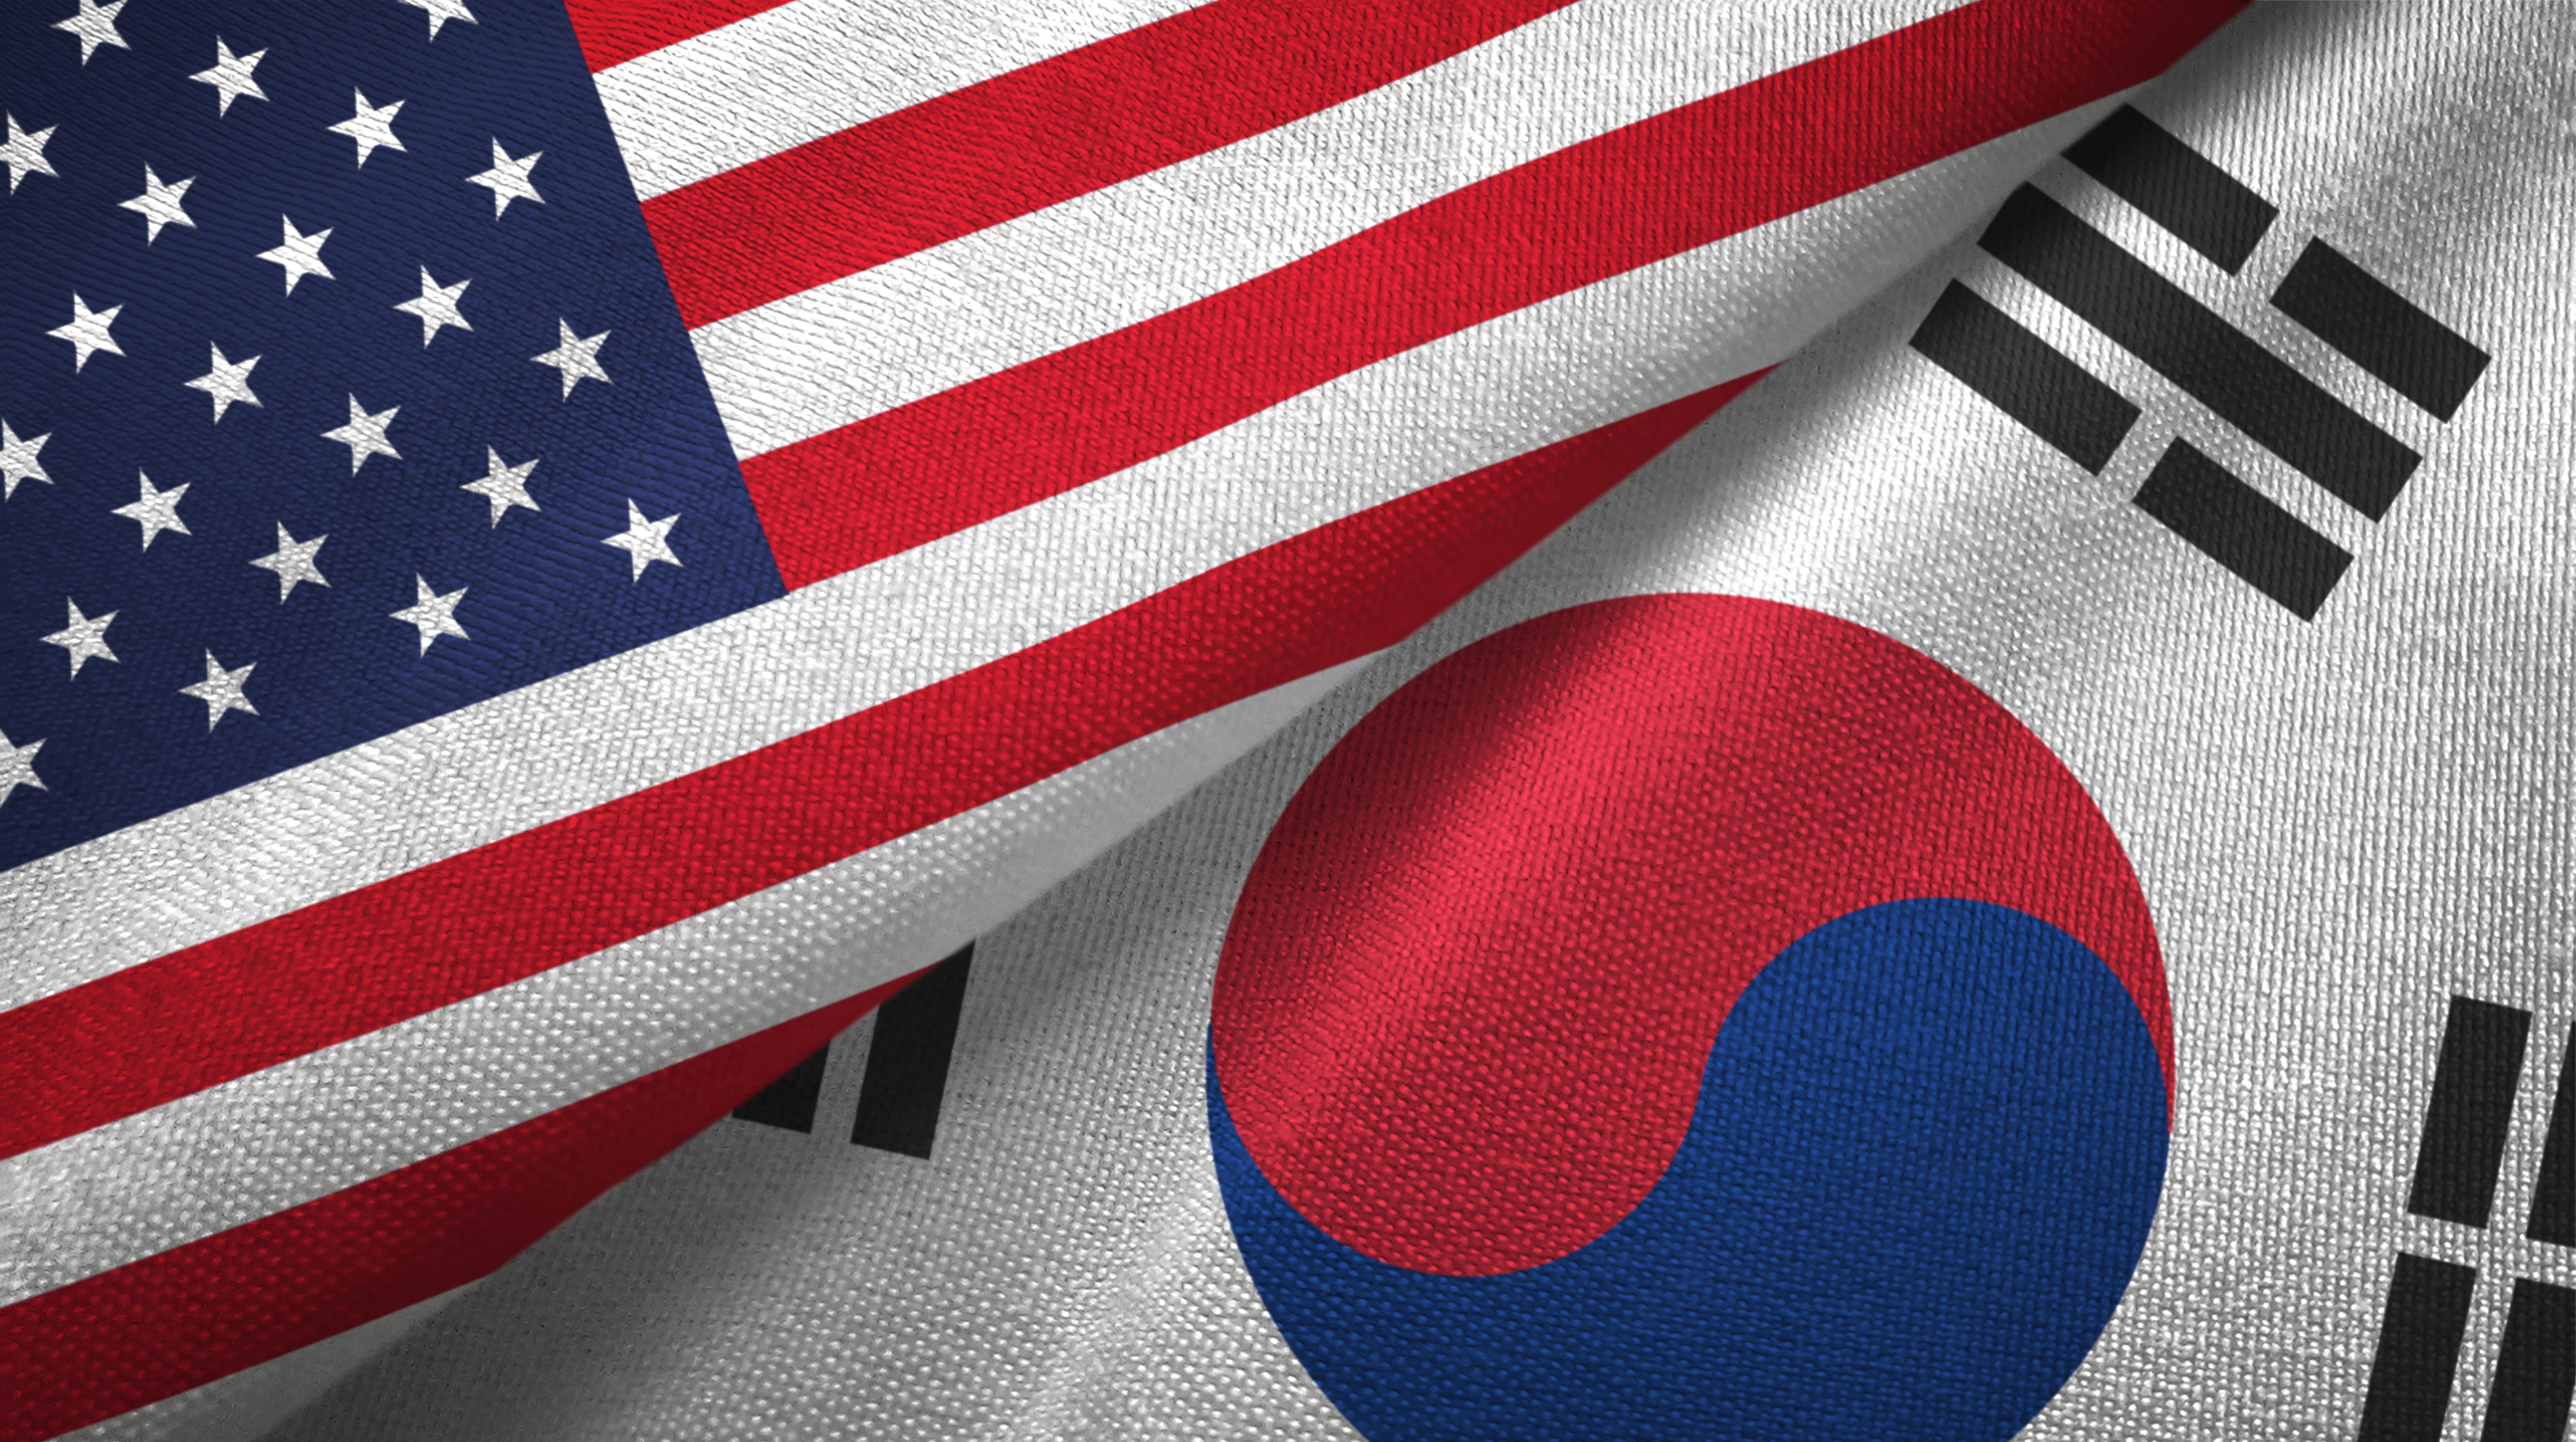 Políticos querem US$ 16 bilhões a mais de investidores cripto nos EUA, já a Coreia tem melhores notícias